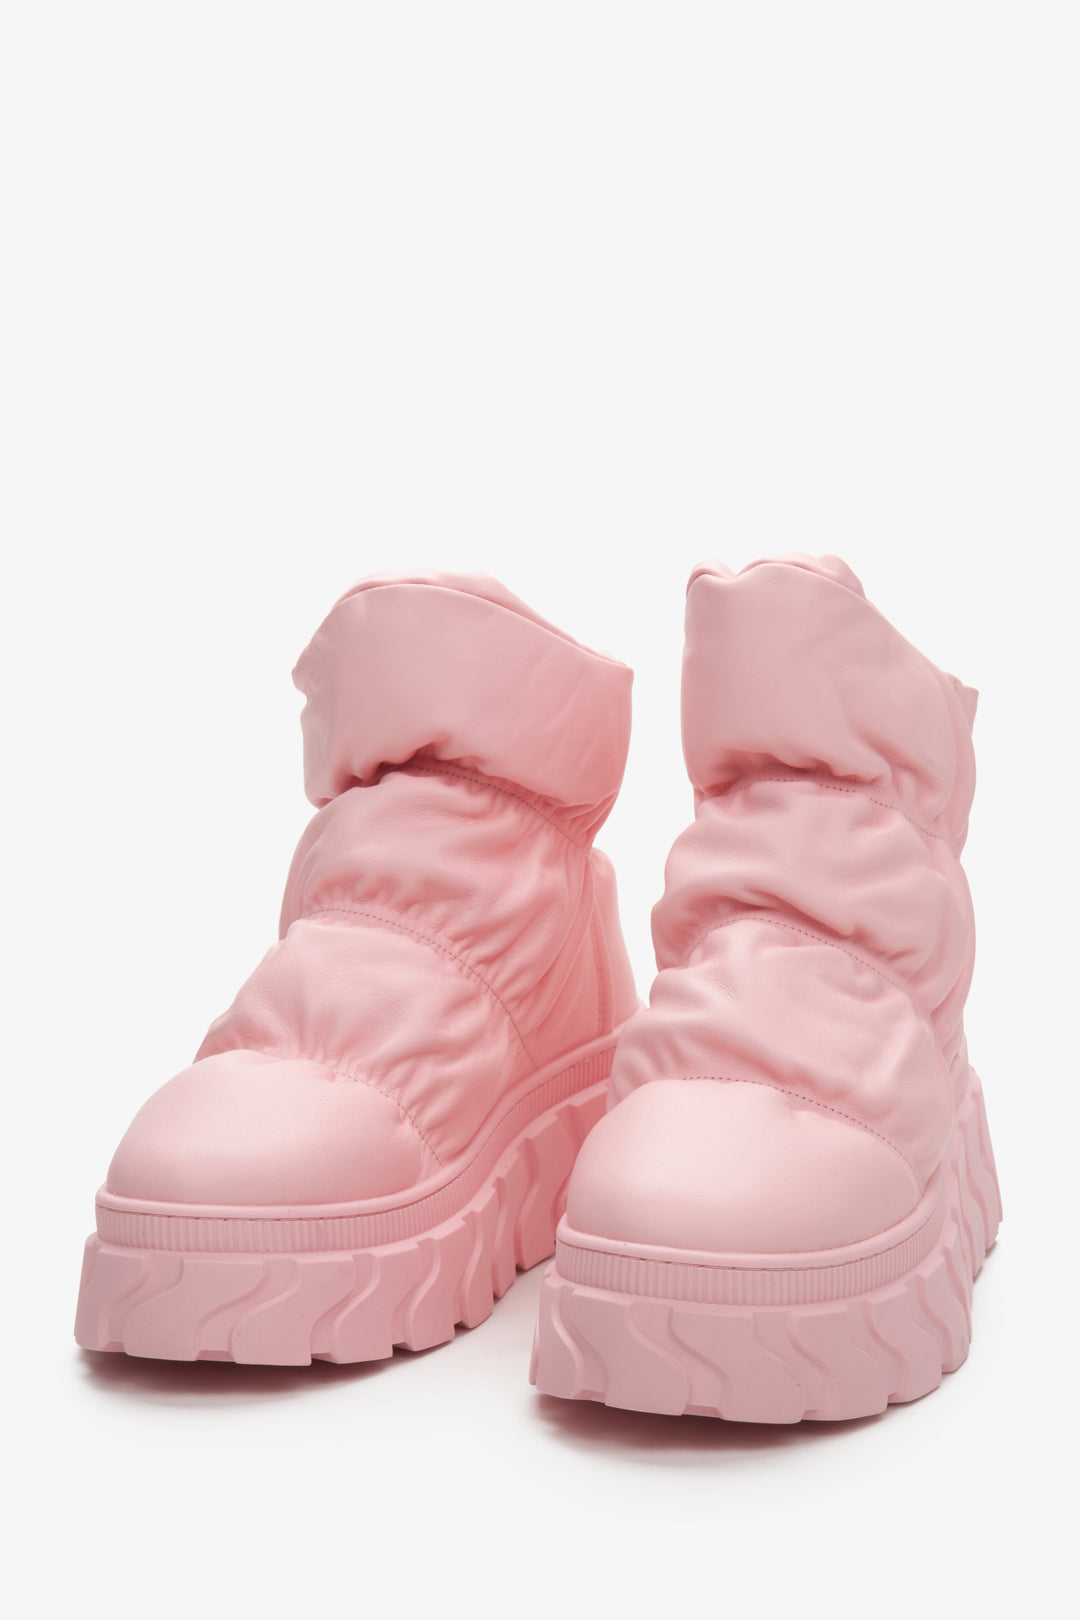 Skórzane śniegowce damskie różowe z puchowym wsadem Estro - zbliżenie na czubek buta.